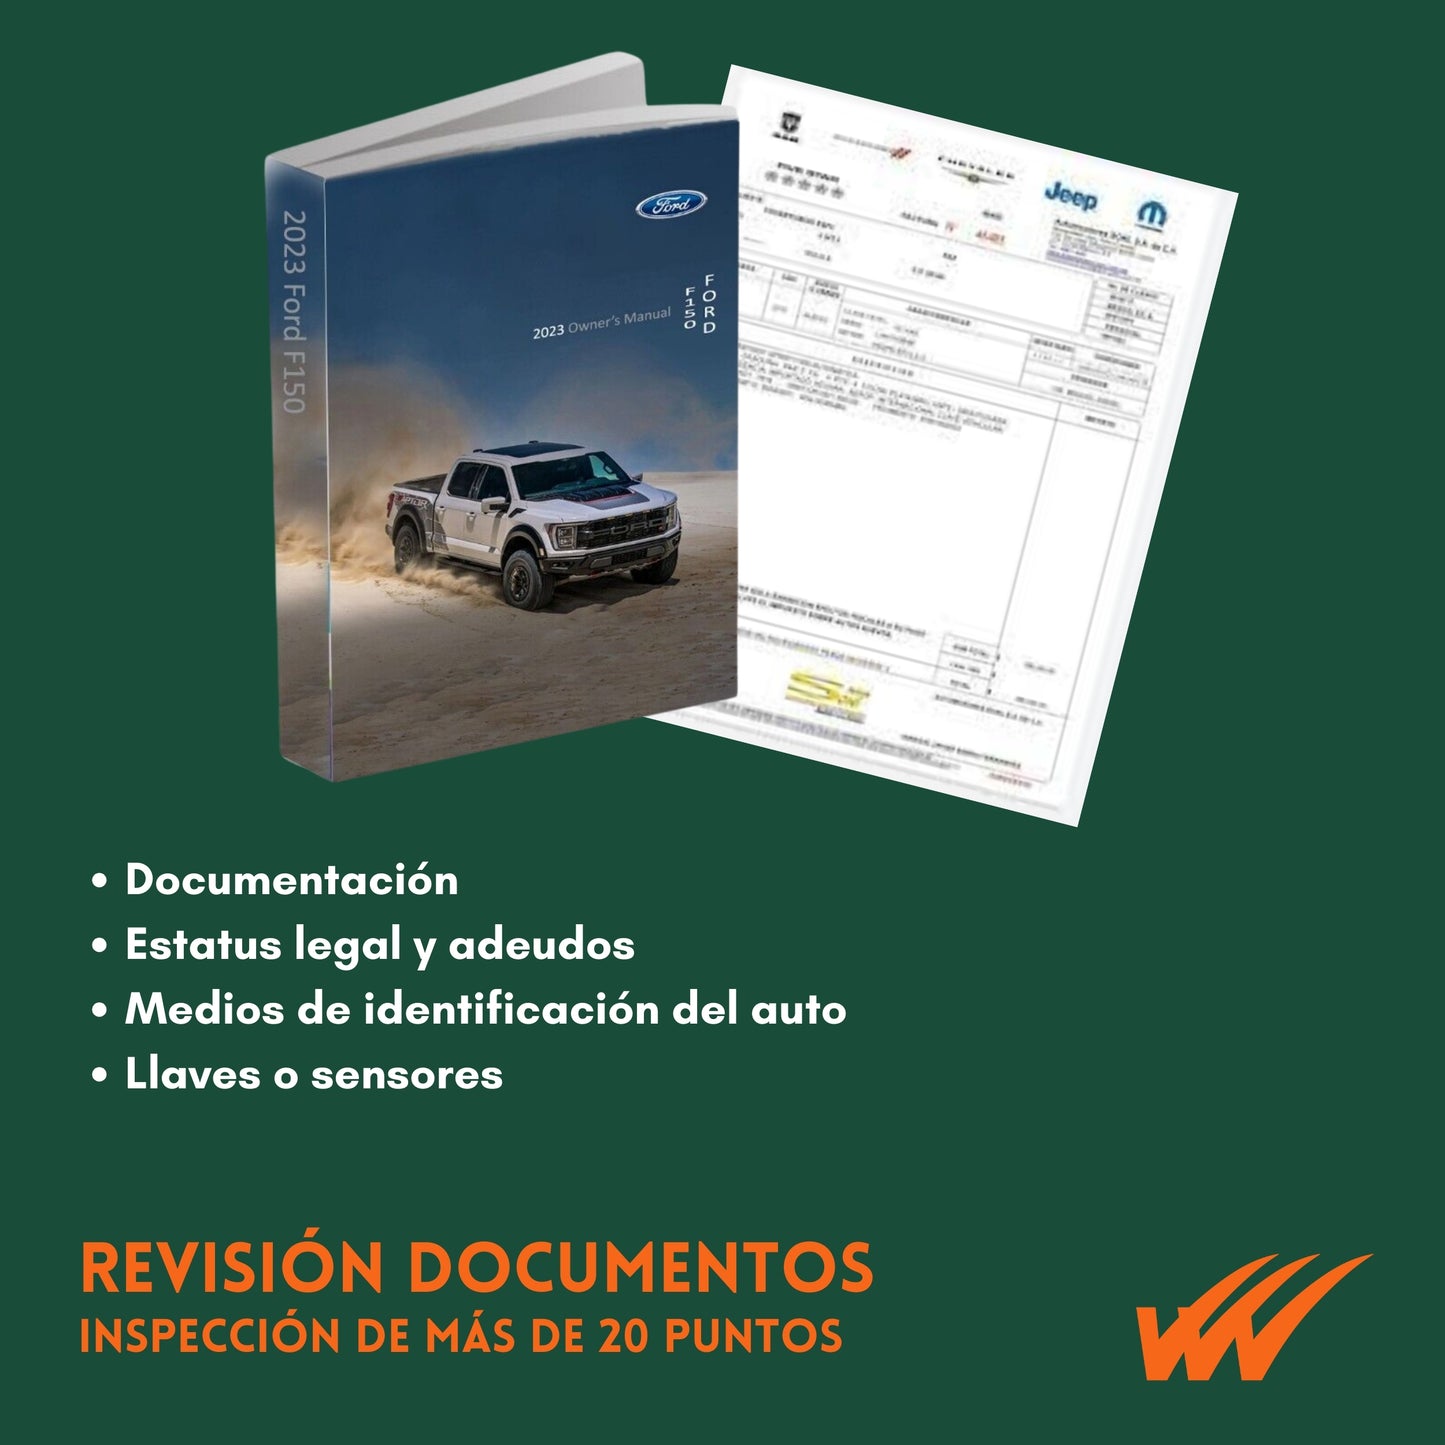 Inspección Total (más de 160 puntos) entre documentos, estatus legal y físico-mecánica de auto seminuevo